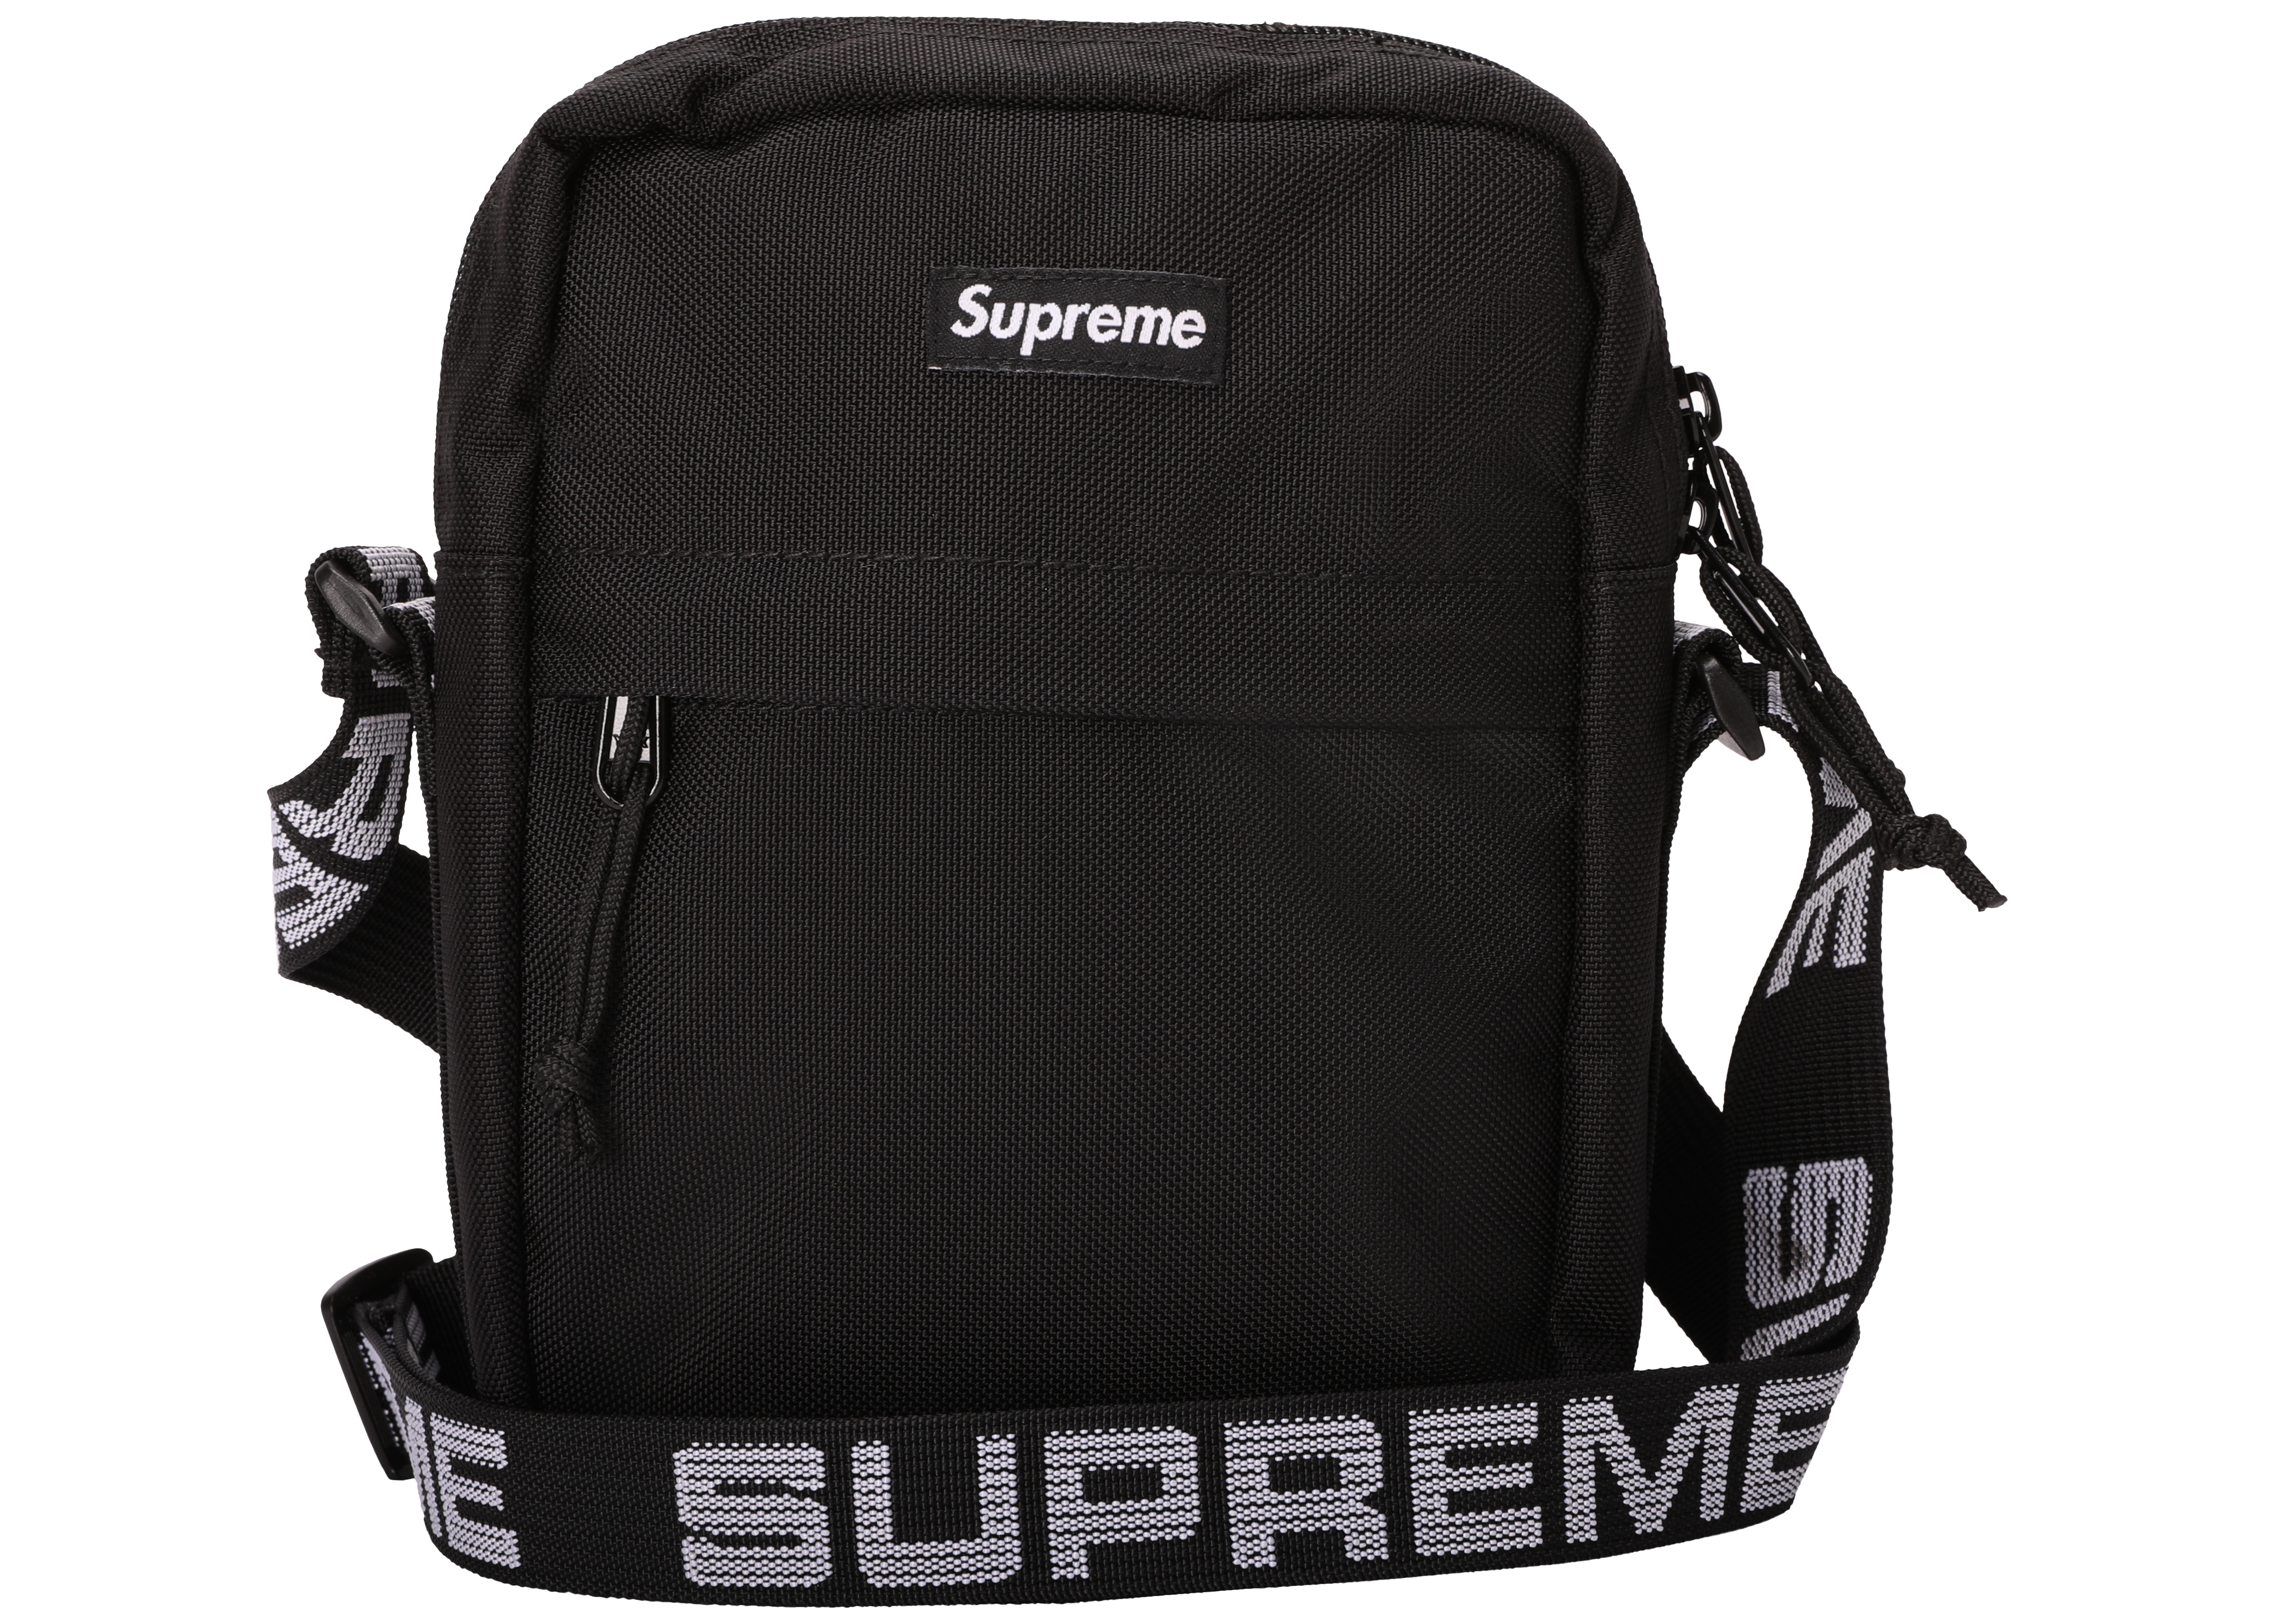 authentic supreme shoulder bag